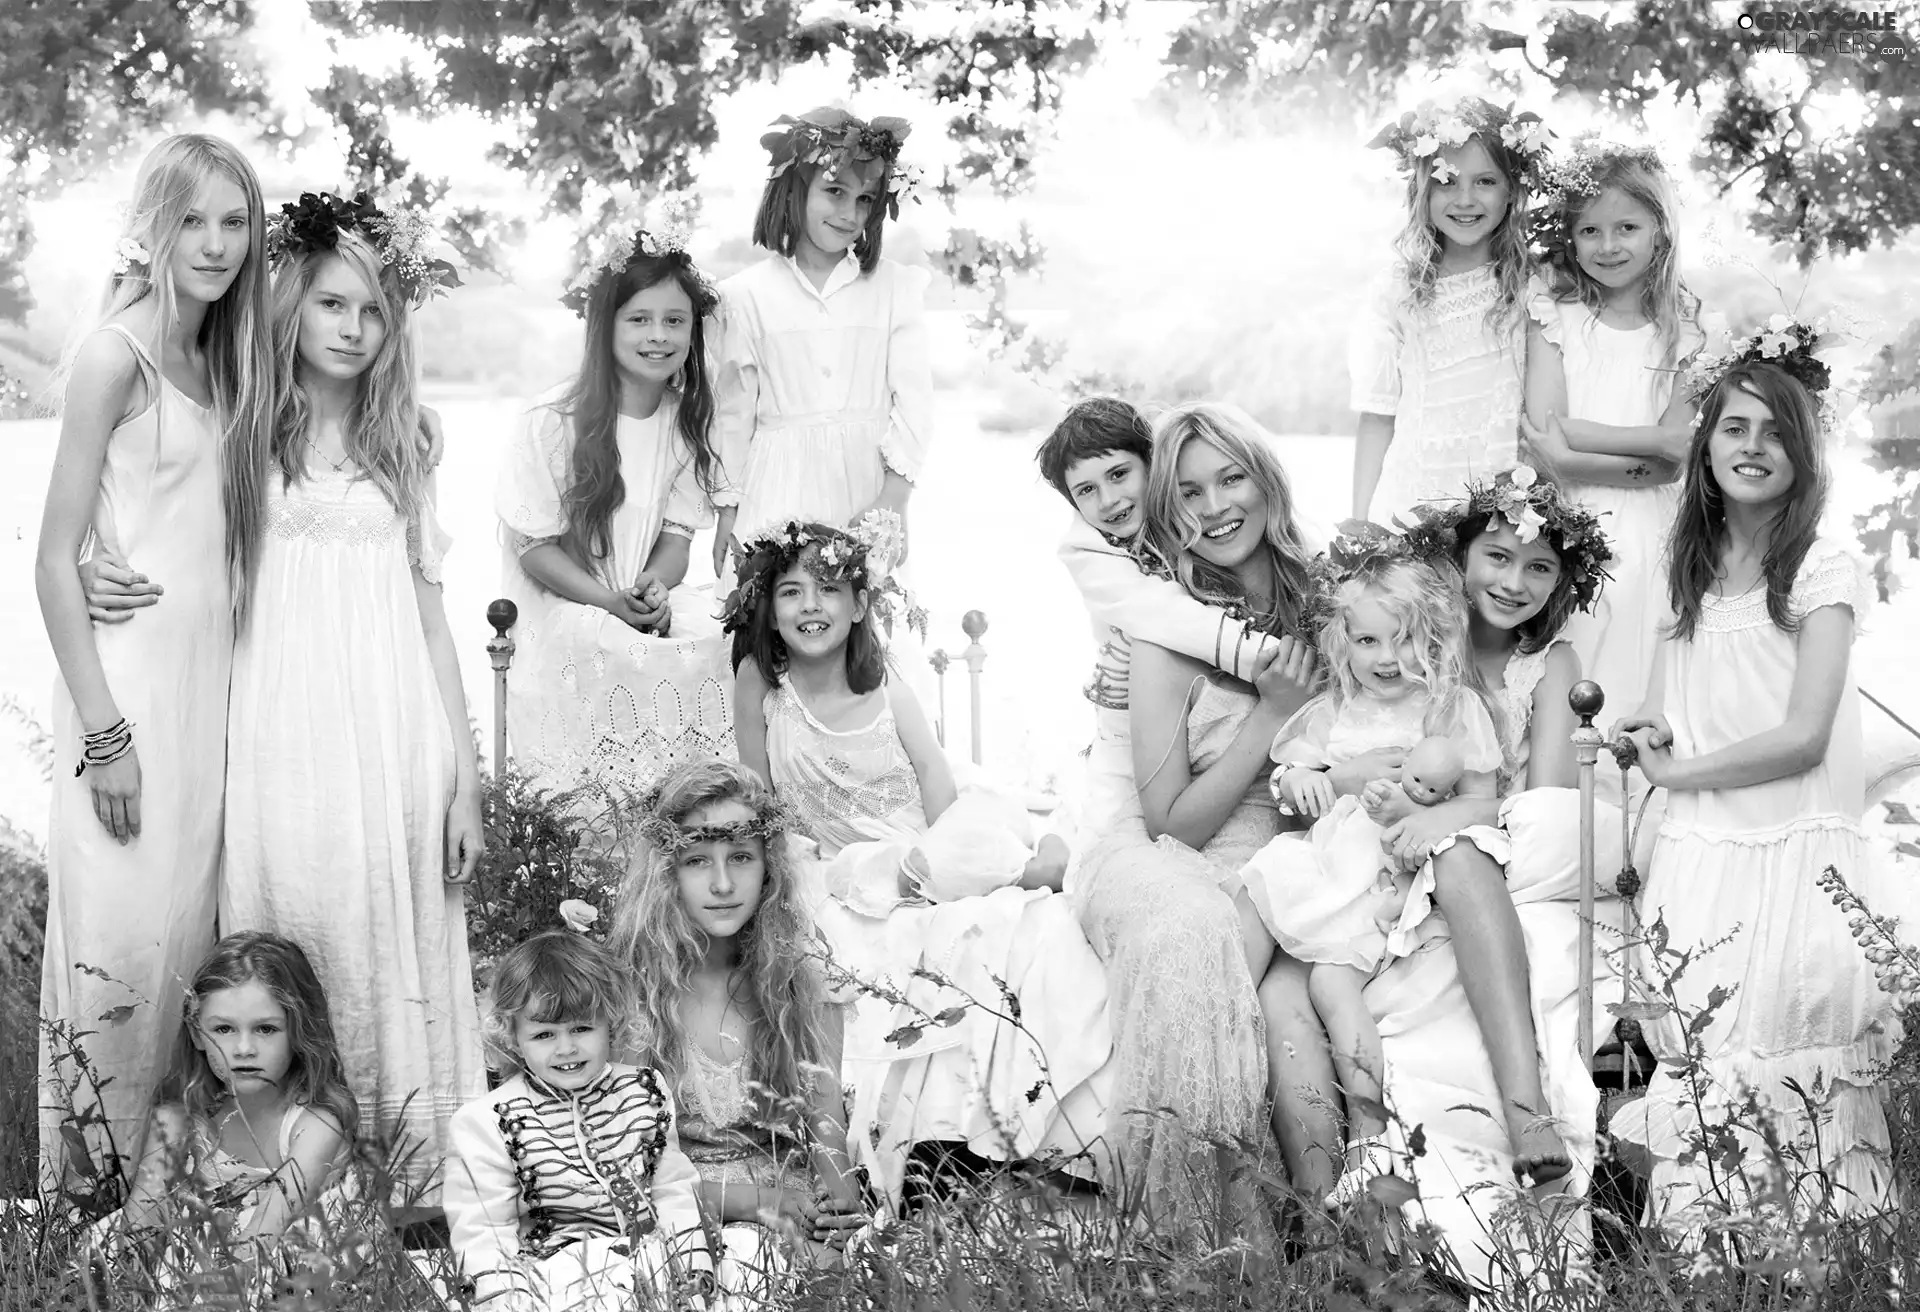 Kate Moss, wreaths, boy, girls